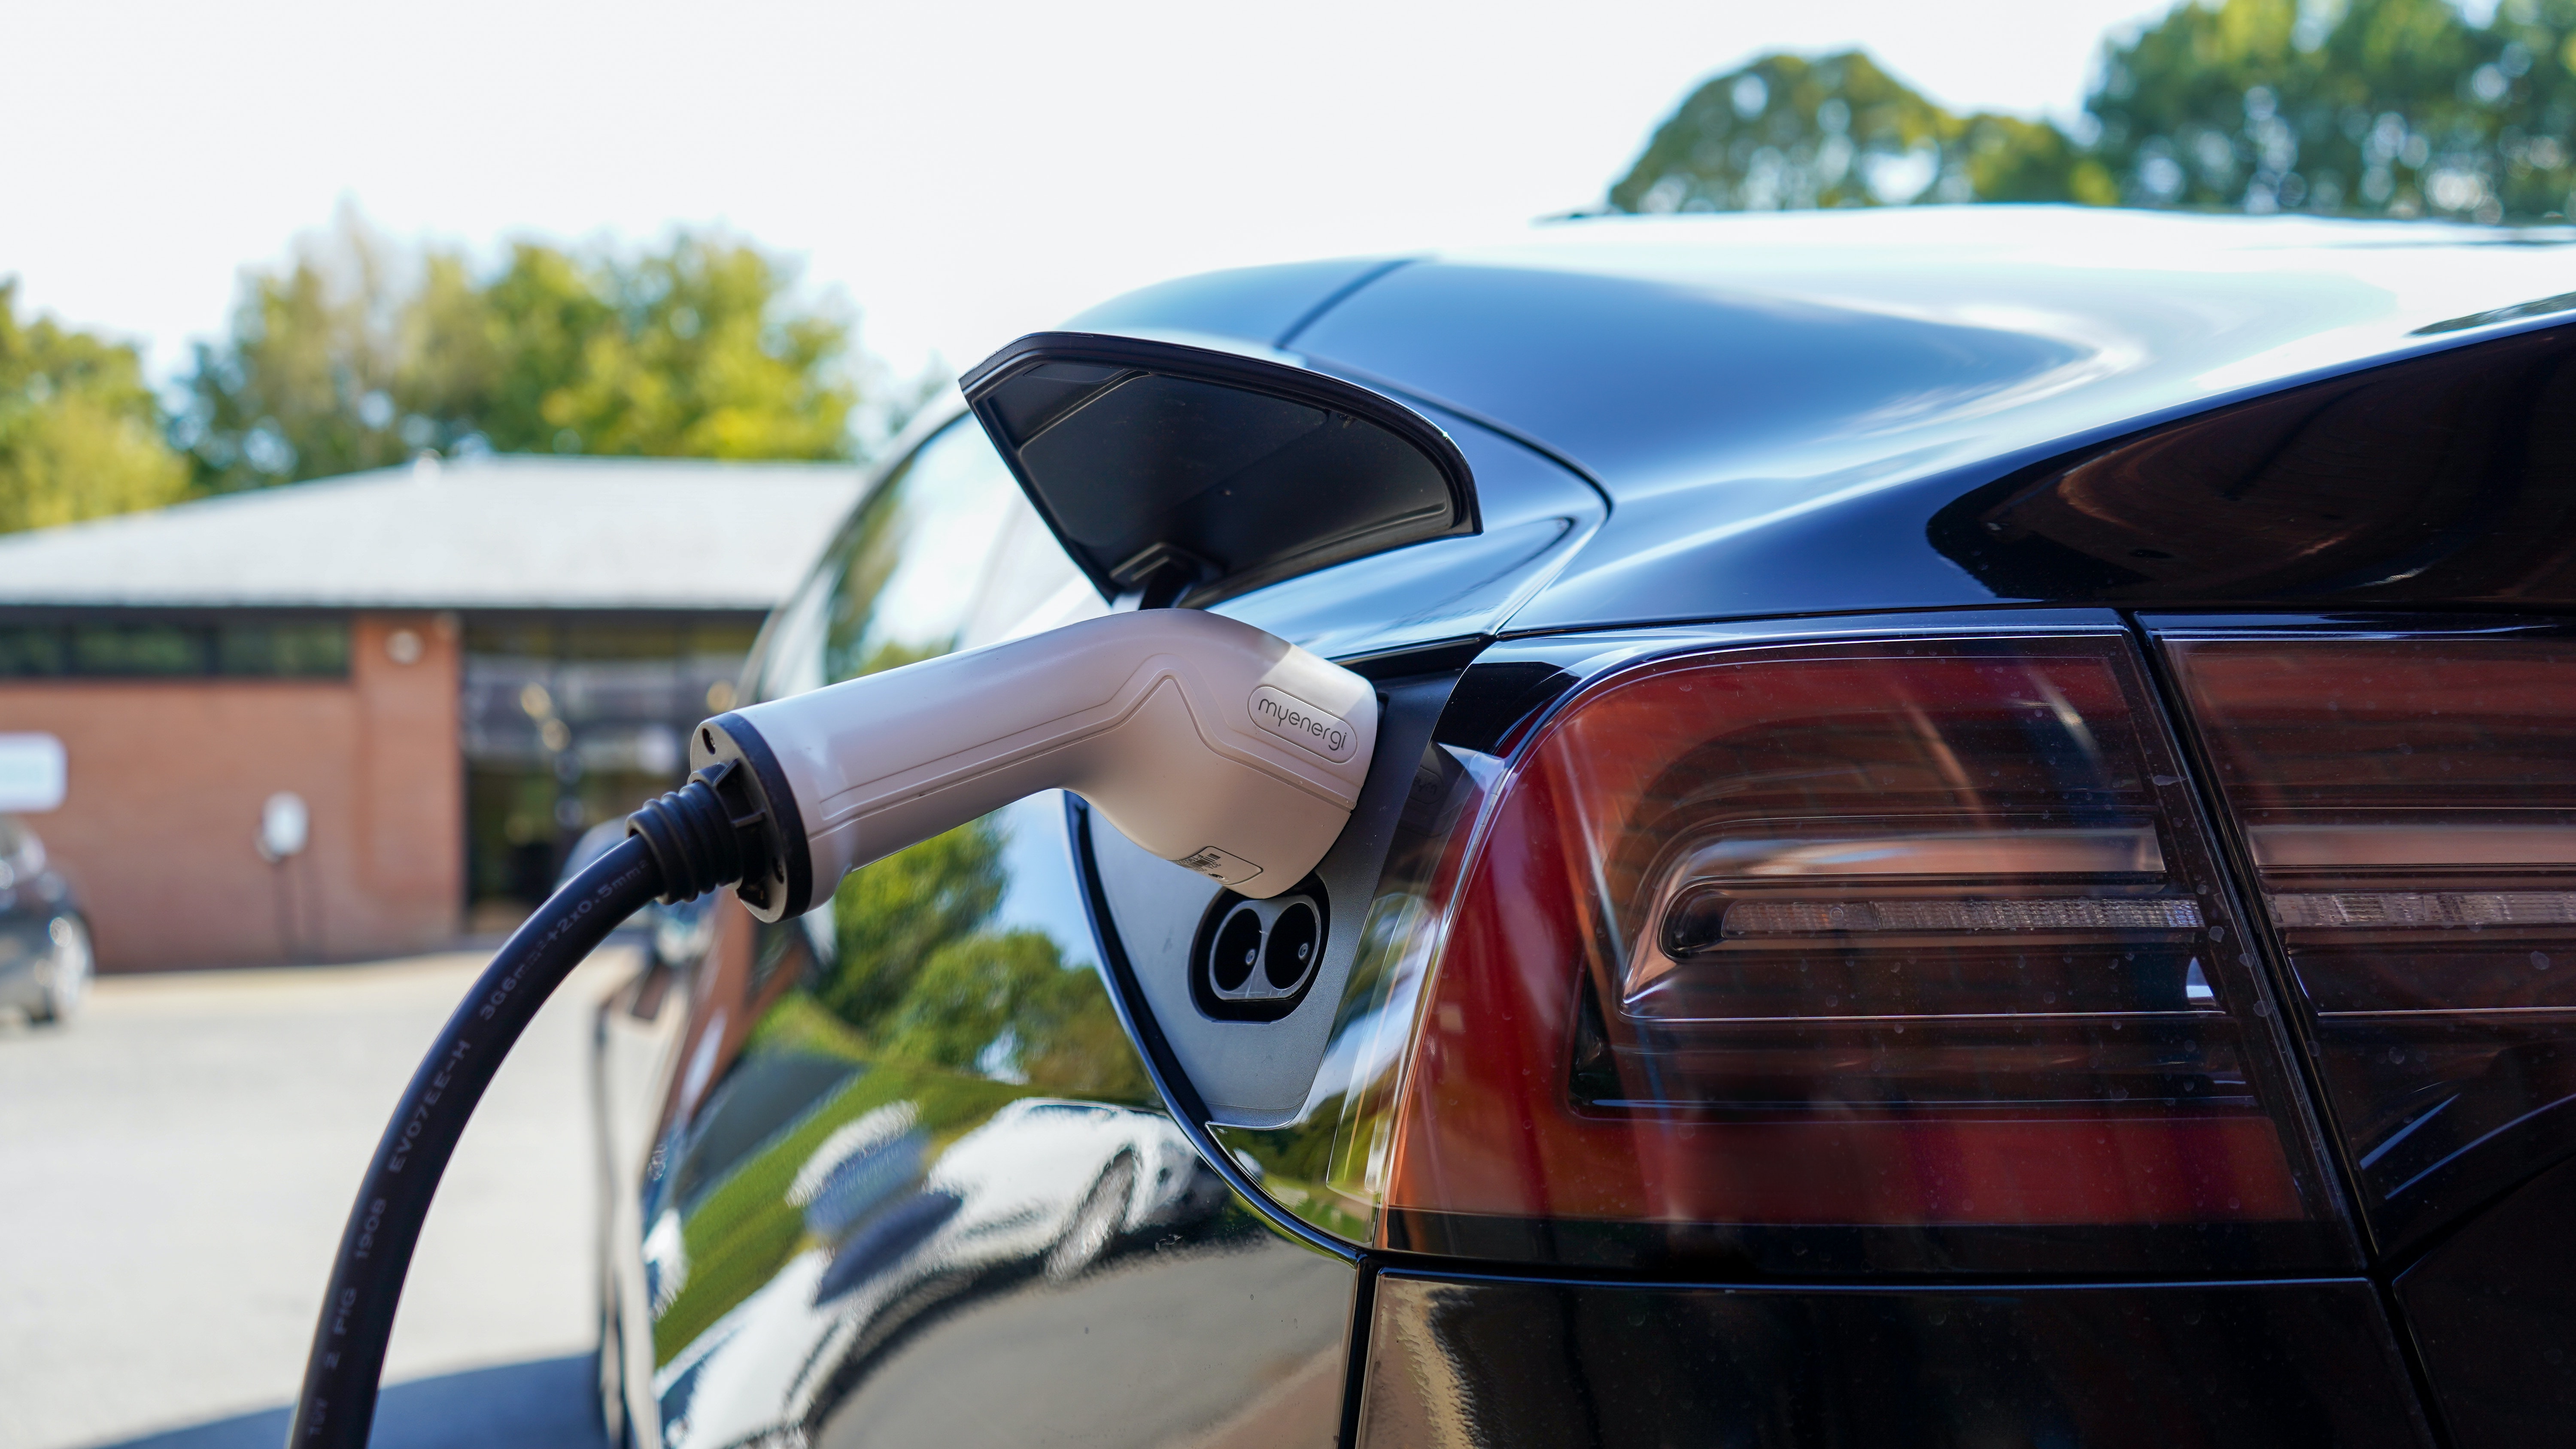 Demande en recharge de véhicules électriques : data et IA à la rescousse | Eleven